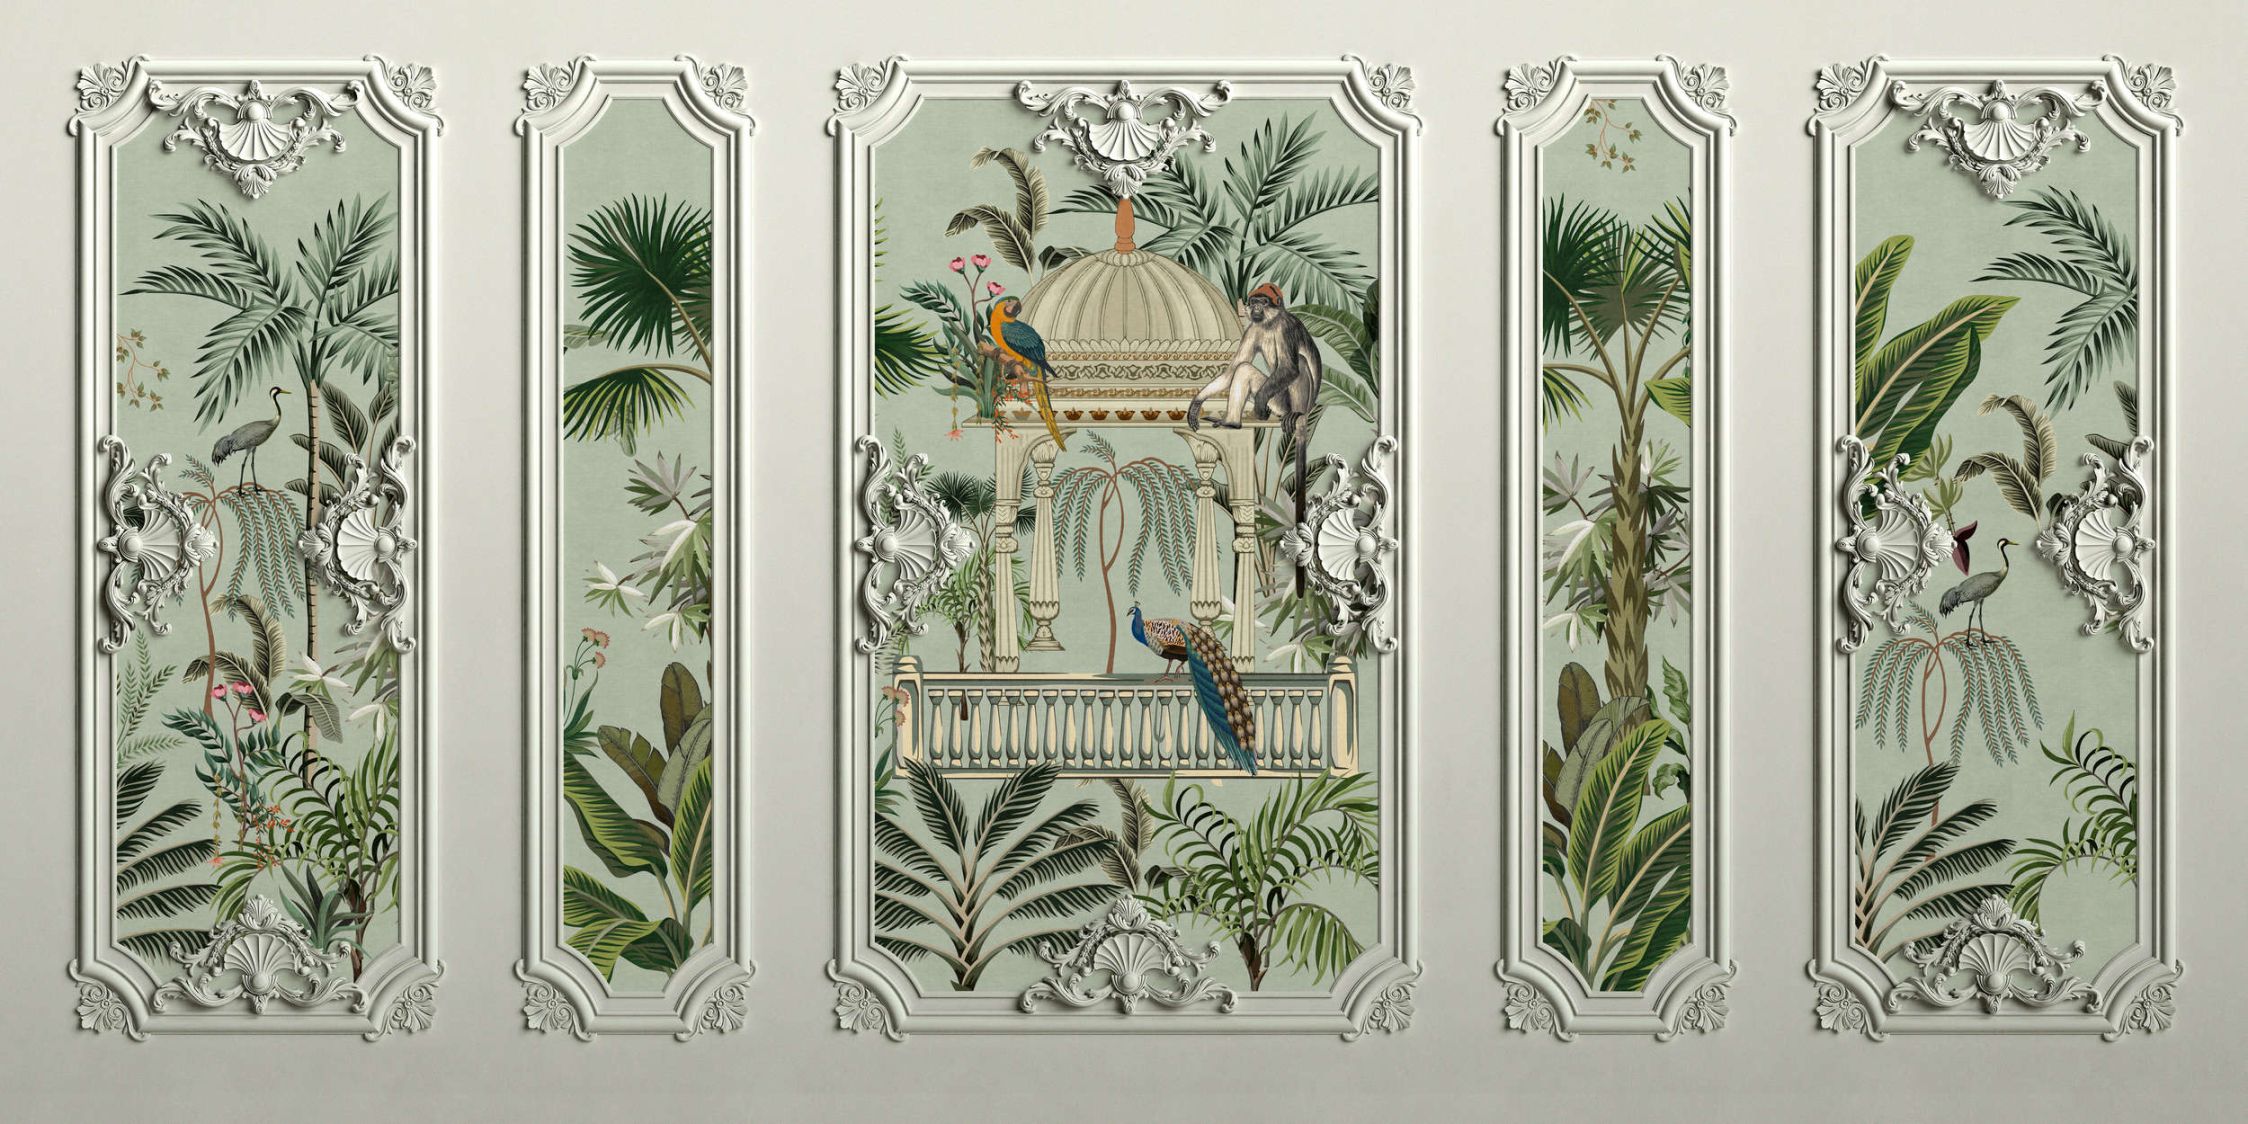             Fotomural »darjeeling« - Efecto de marco de estuco con pájaros y palmeras con textura de lino en el fondo - Tela no tejida de alta calidad, lisa y ligeramente brillante
        